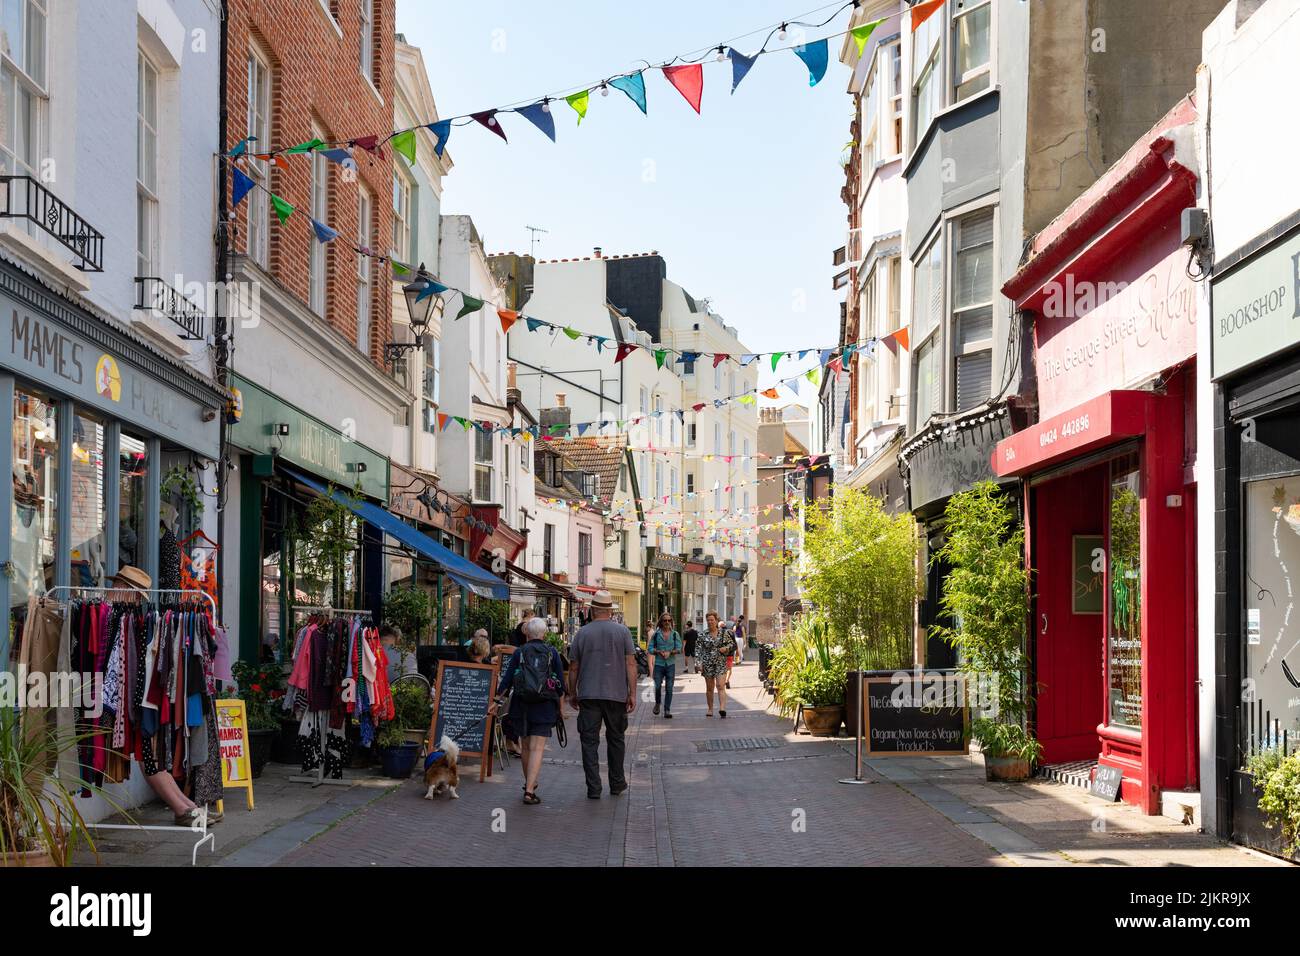 George Street - rue piétonne avec boutiques et cafés dans la vieille ville de Hastings en été - Hastings, East Sussex, Angleterre, Royaume-Uni Banque D'Images